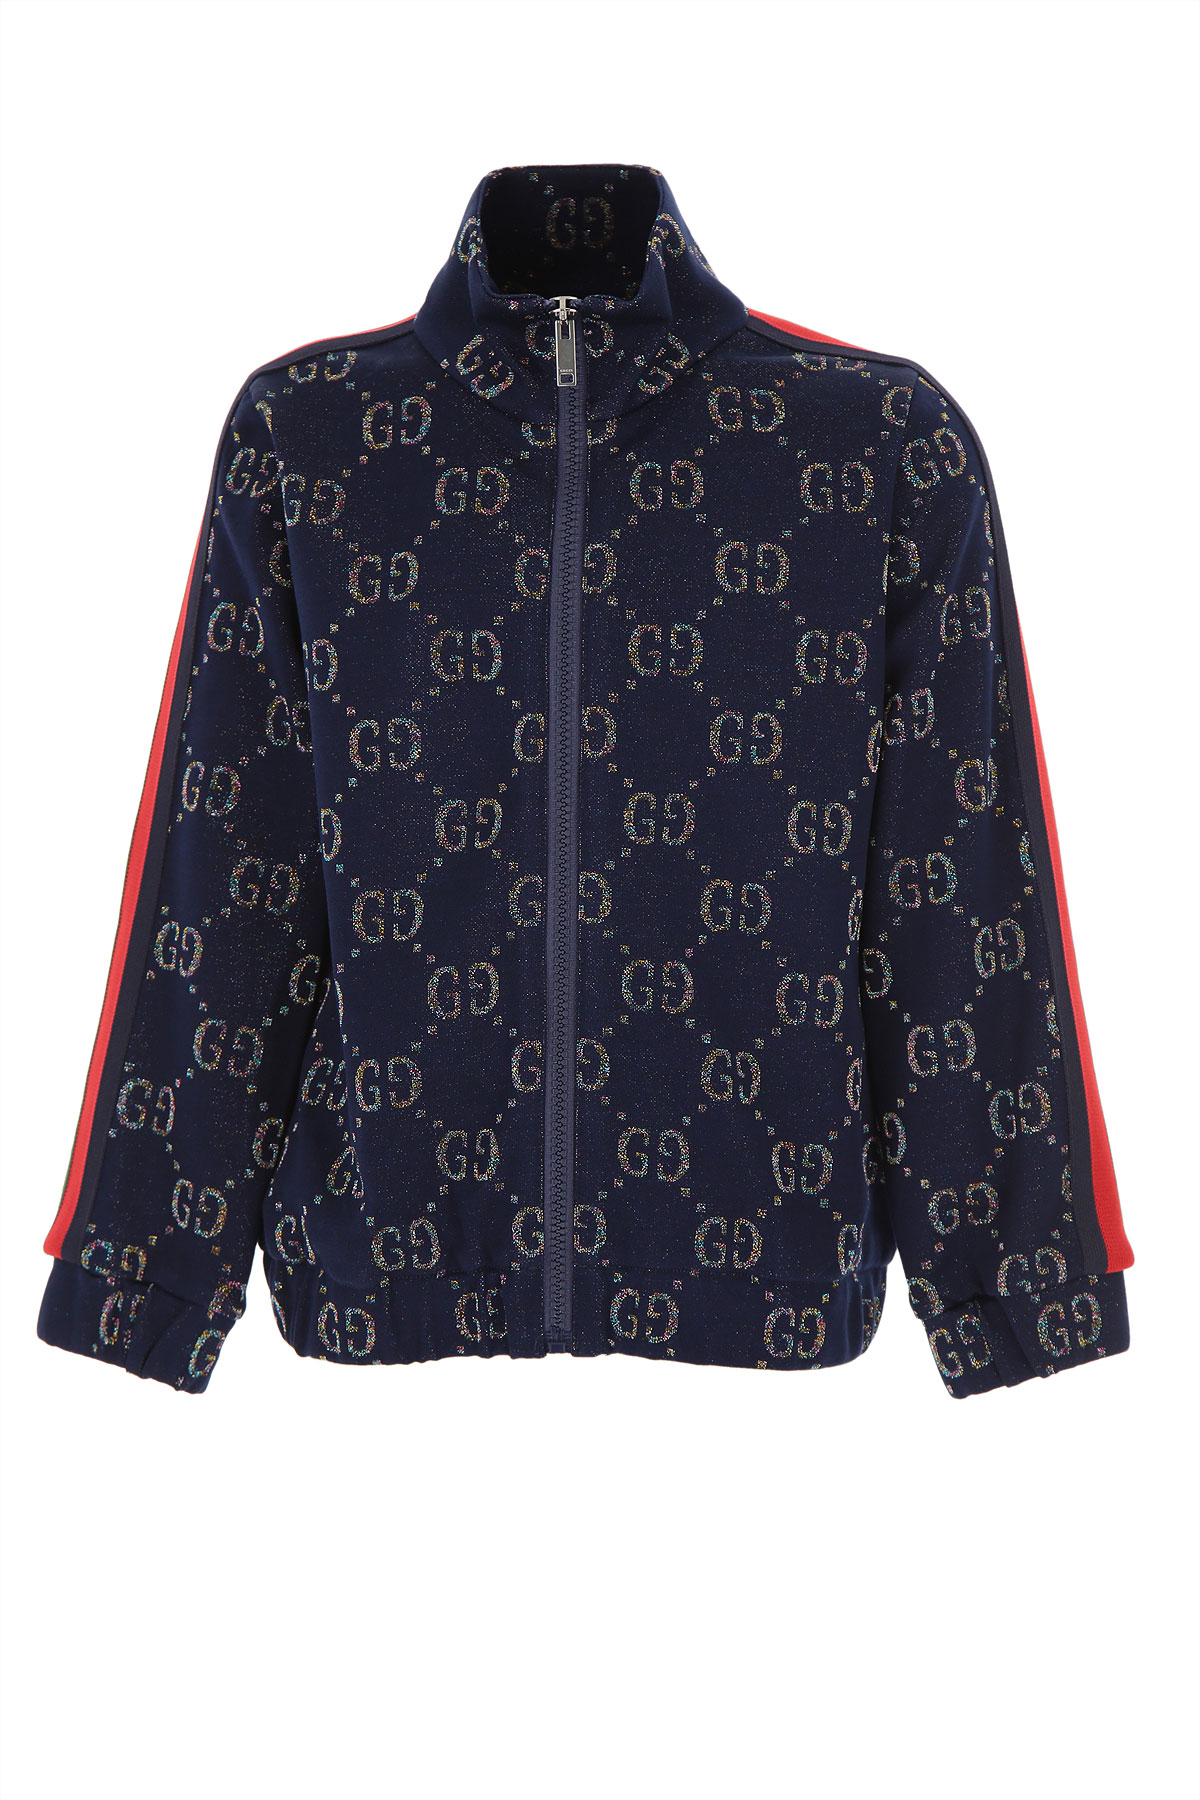 Gucci Kinder Sweatshirt & Kapuzenpullover für Mädchen Günstig im Sale, Blau, Baumwolle, 2017, 10Y 4Y 6Y 8Y